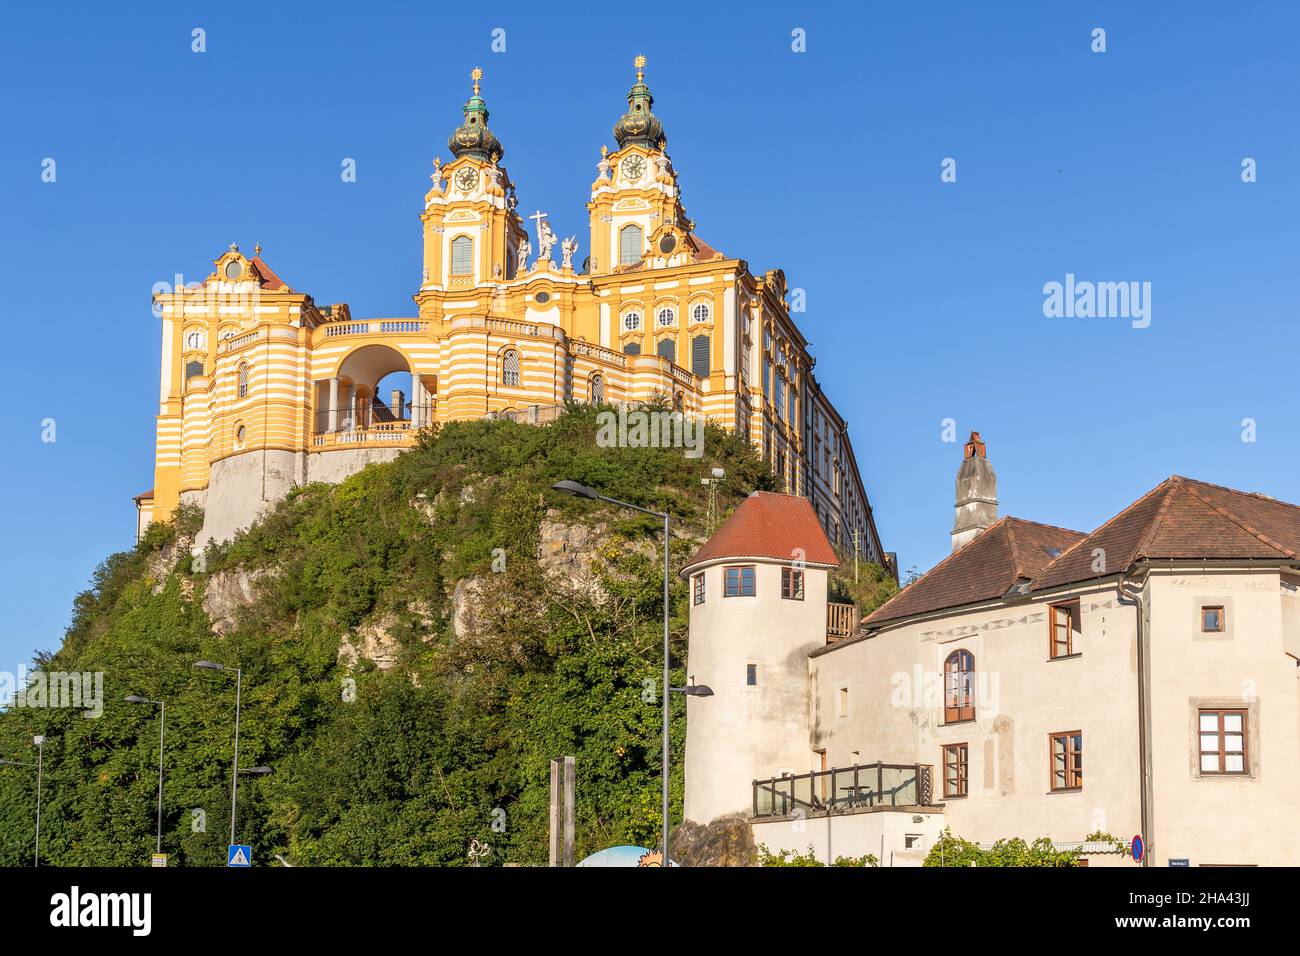 Melk Abbey, Austria baroque Benedictine monastery castle. Stock Photo